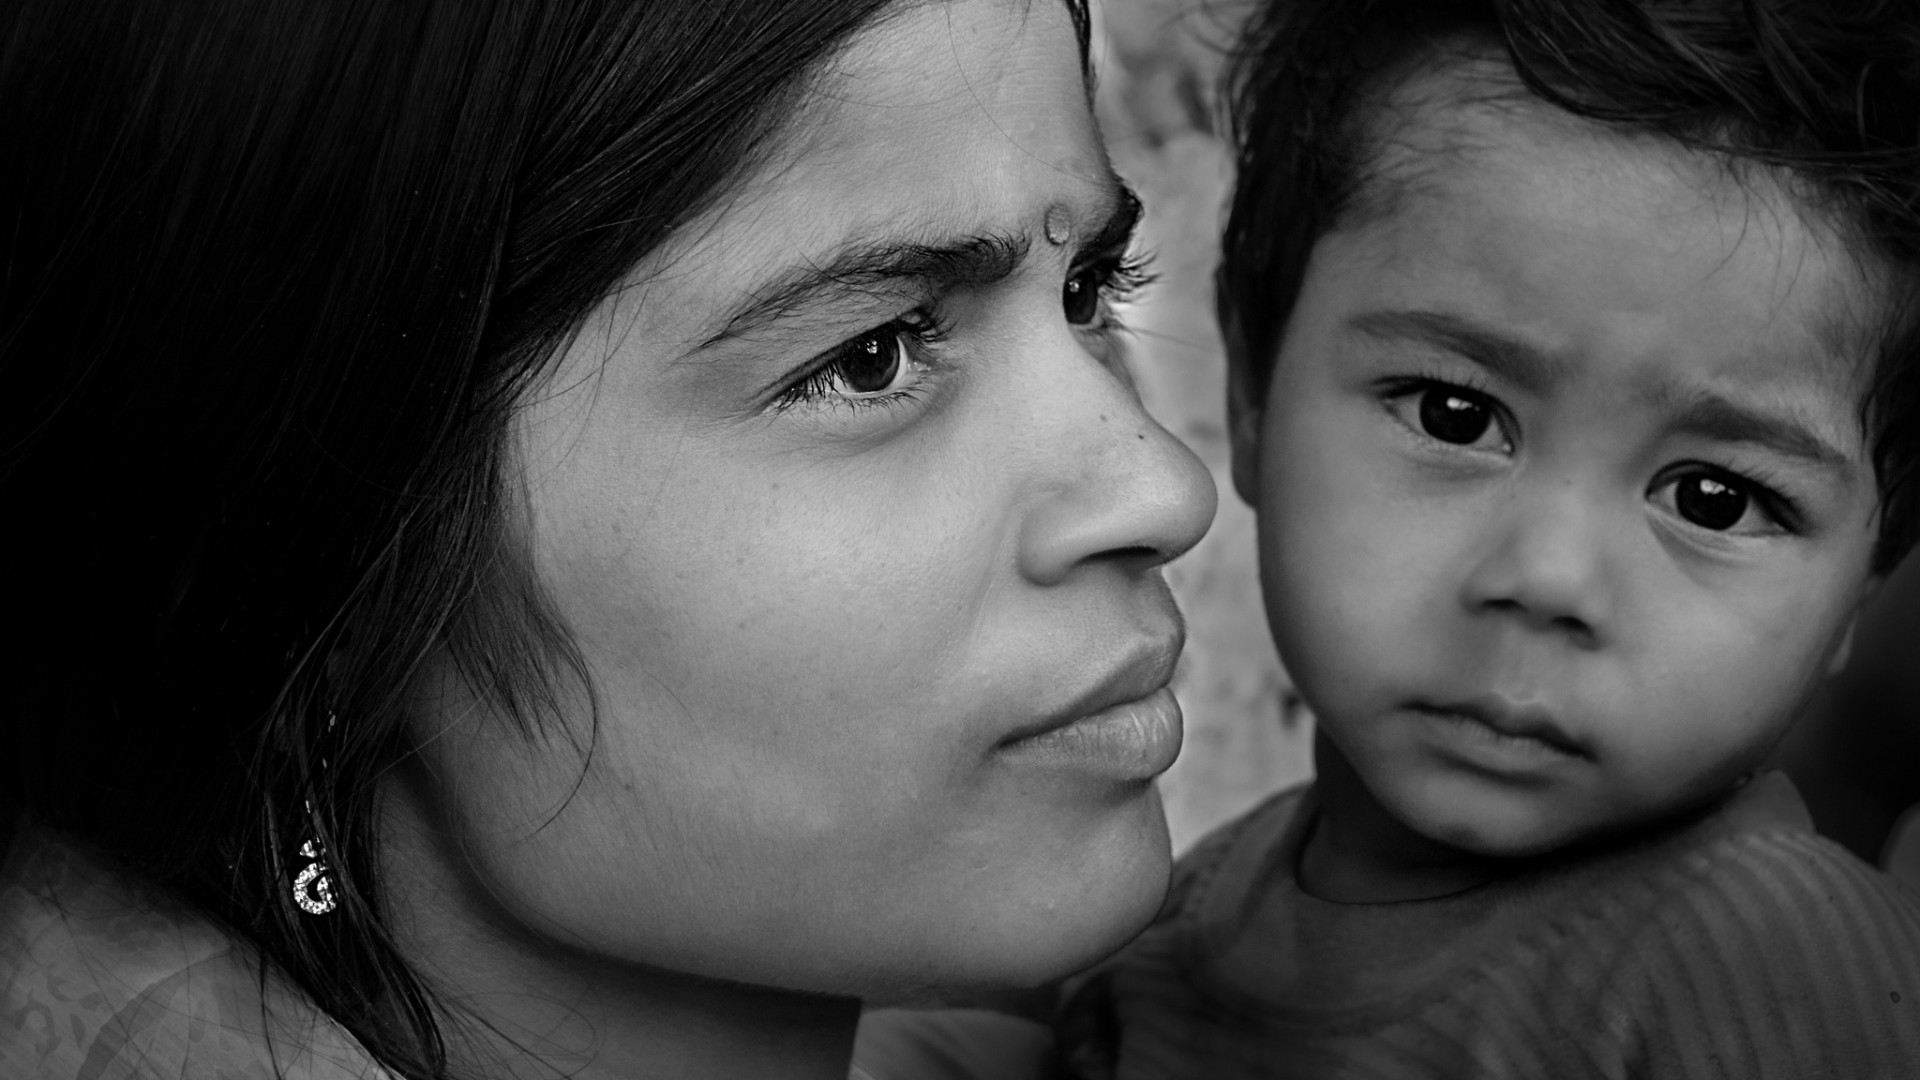 En Inde, les personnes seules peuvent désormais adopter des enfants (Photo d'illustration:Rajashri Mitra/Flickr/CC BY 2.0)